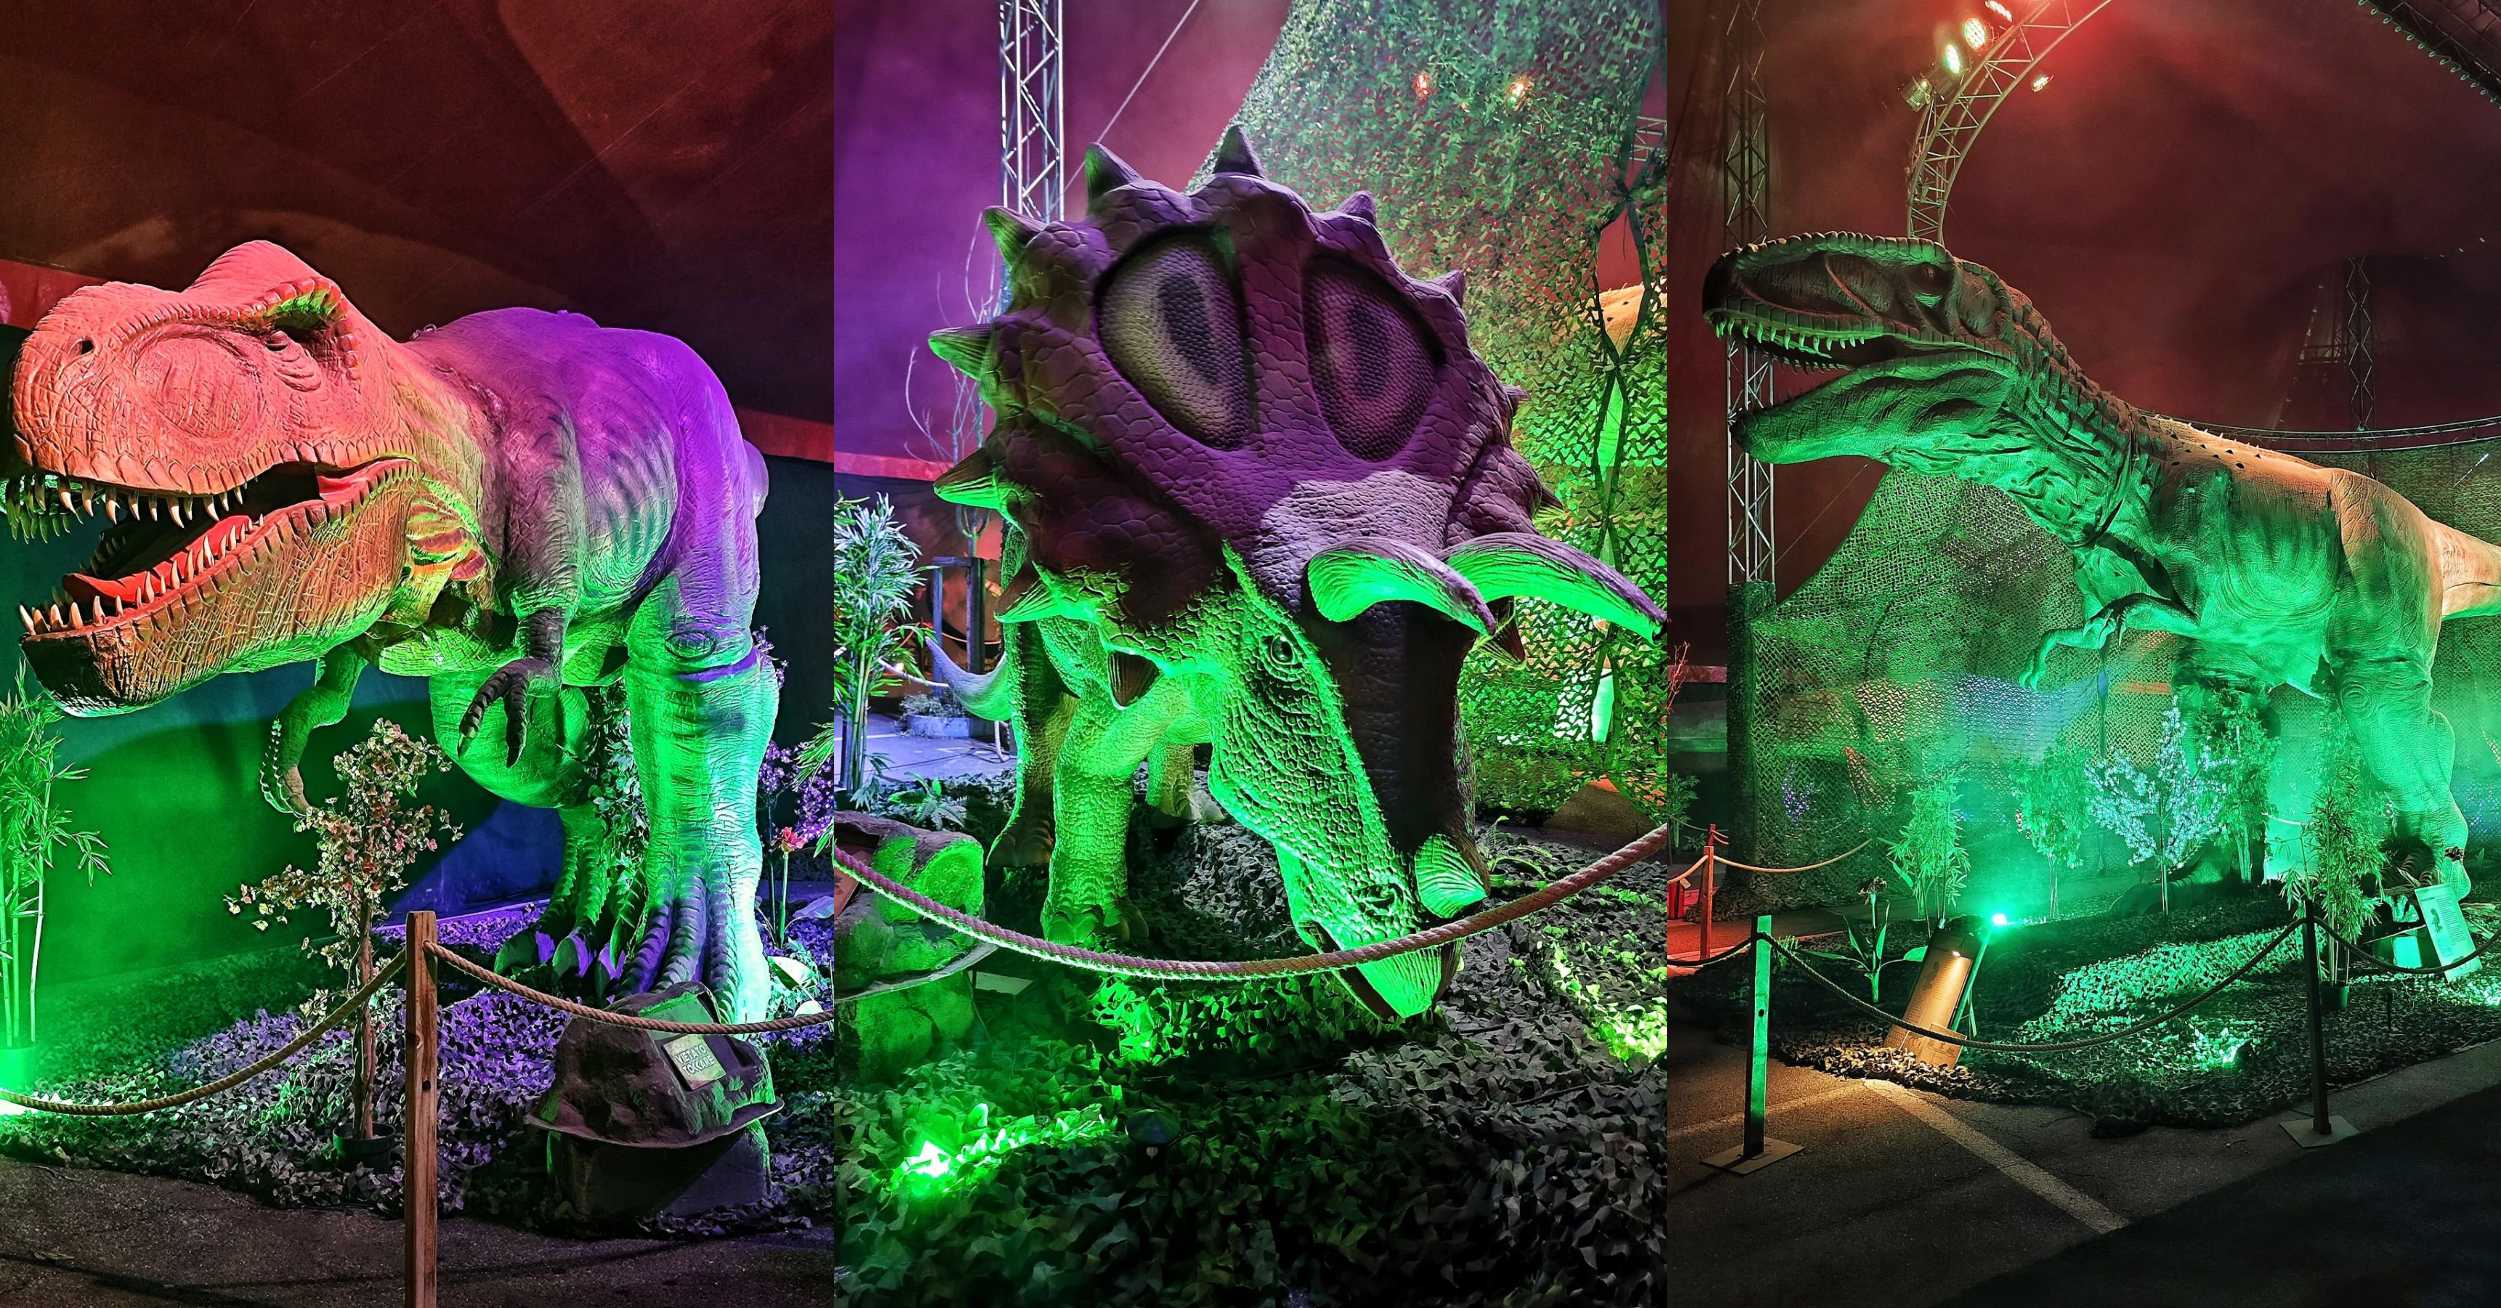 Arriva anche a Milano Segrate la mostra “Dinosauri in città” con esemplari  robotizzati e a grandezza naturale